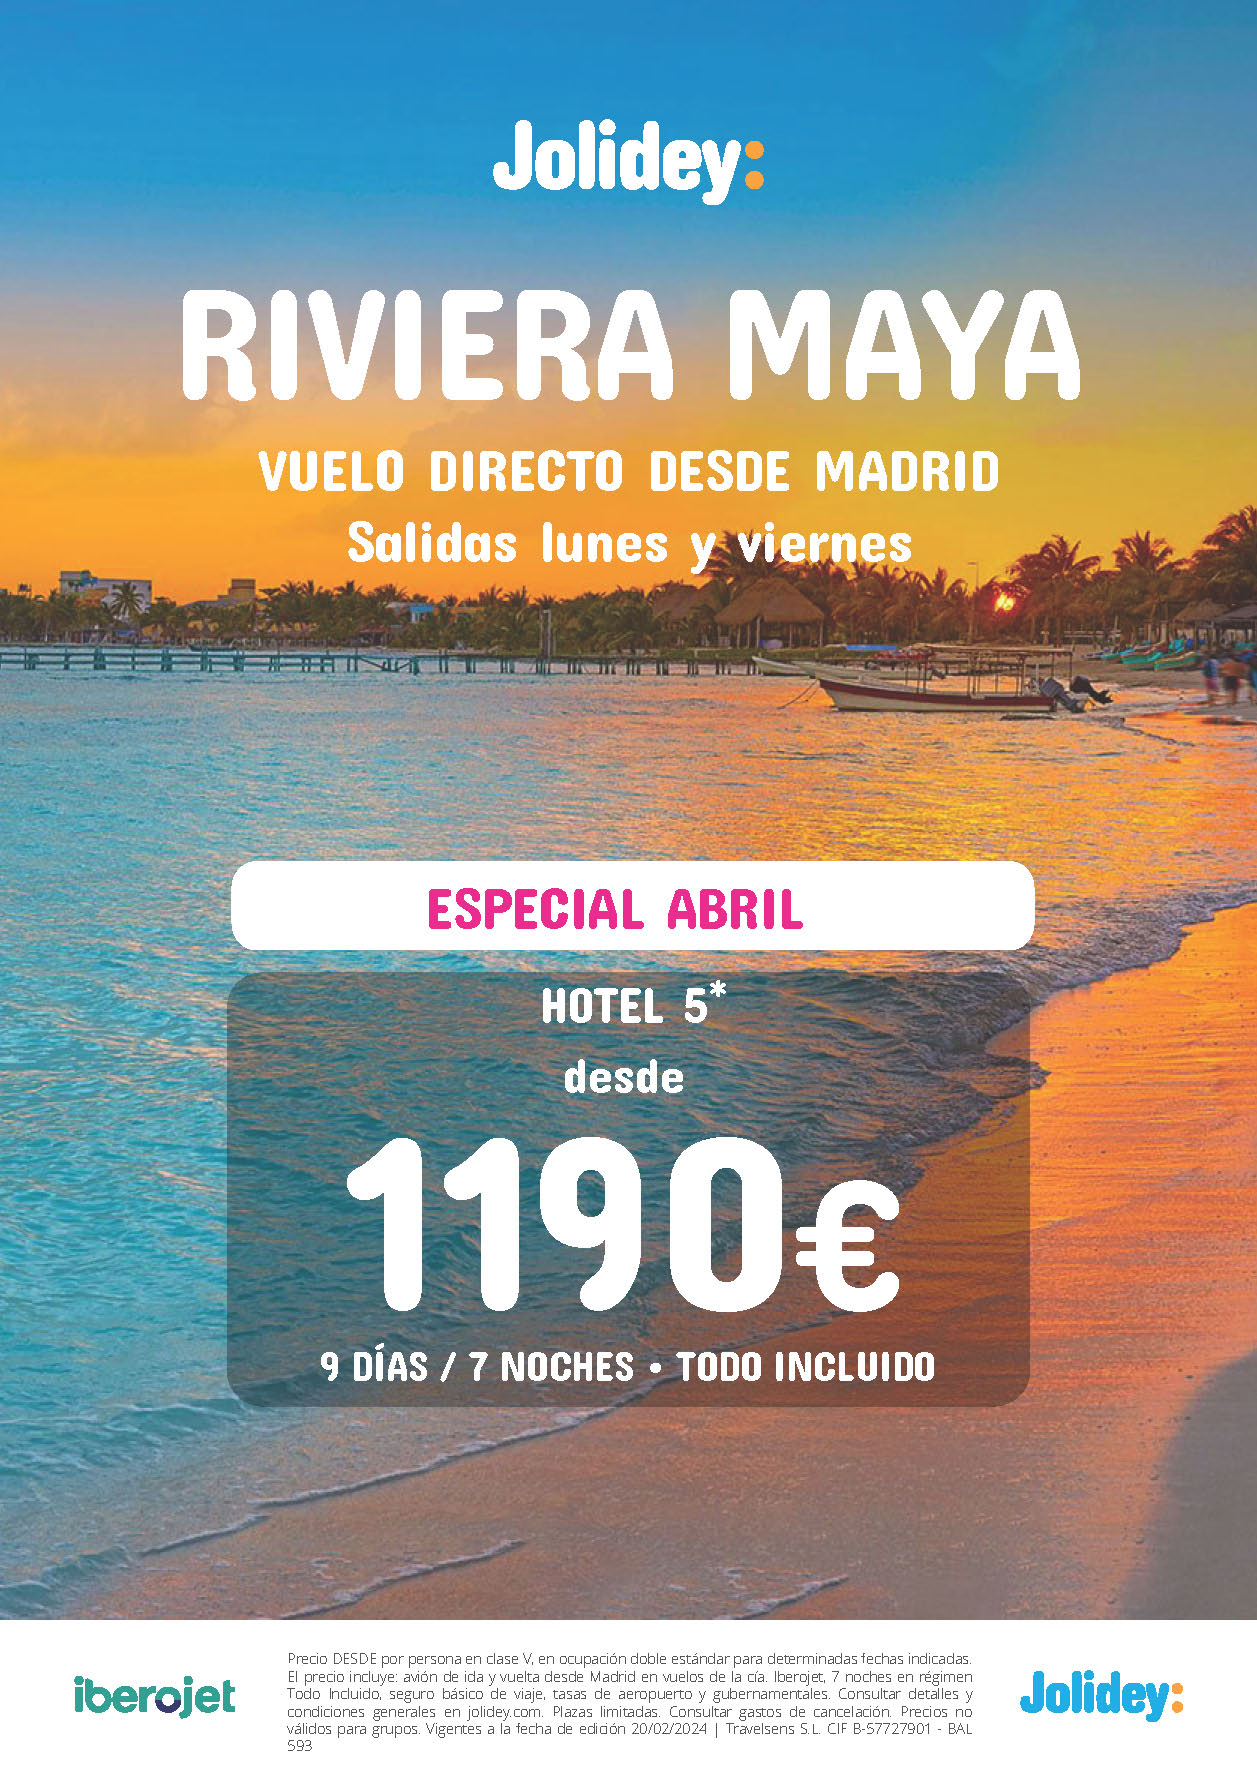 Oferta Jolidey Estancia en Riviera Maya Mexico 9 dias Hotel 5 estrellas Todo Incluido salidas Abril 2024 en vuelo directo desde Madrid